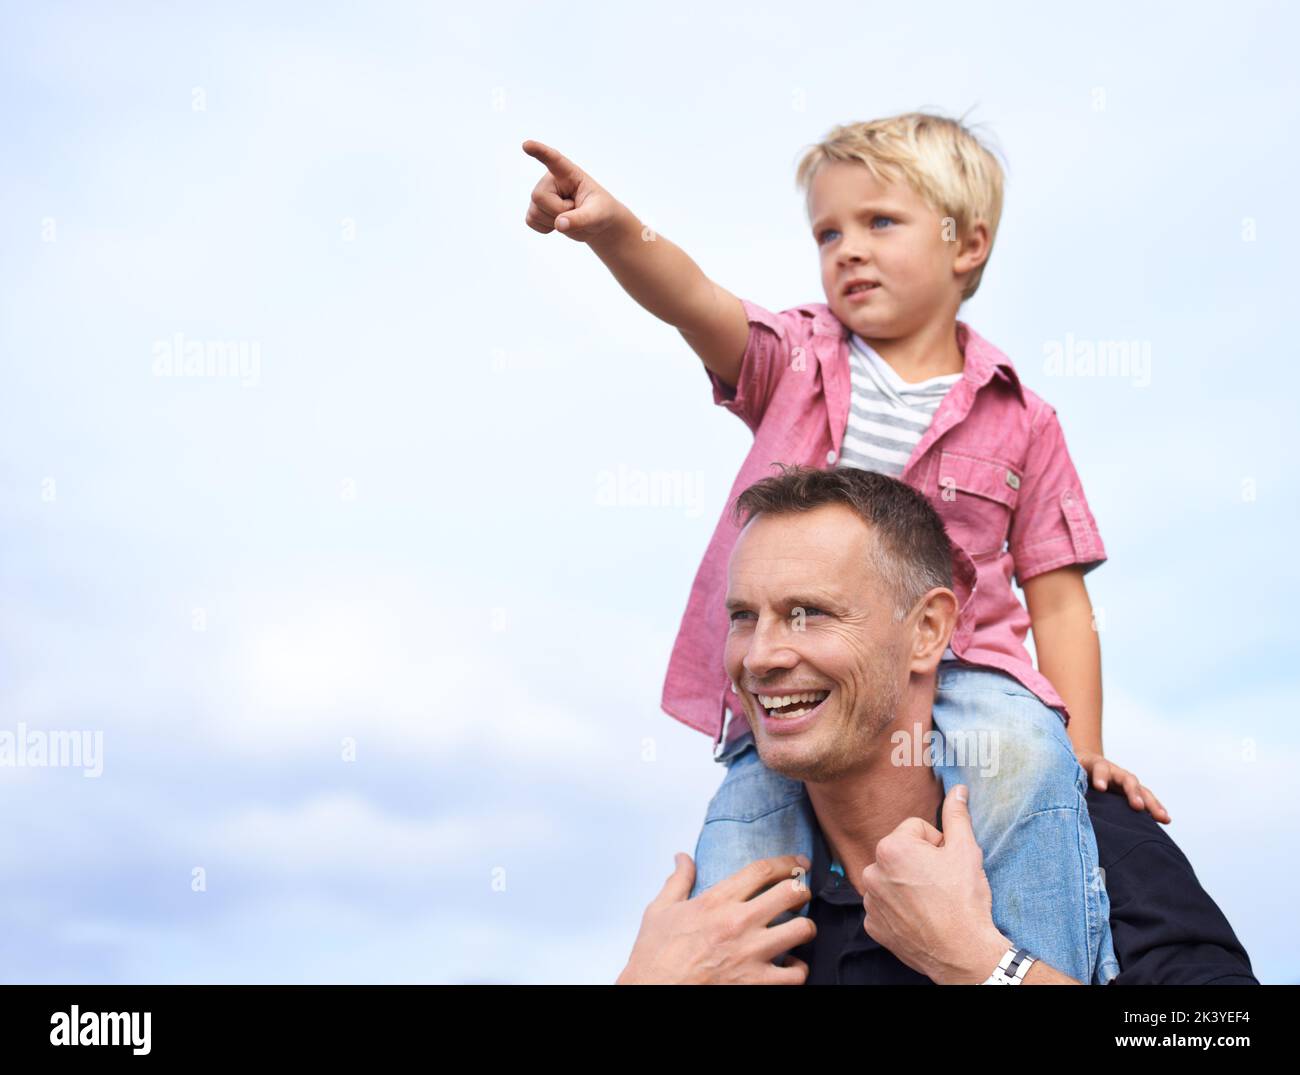 Godendo suo papà con papà. Un bel padre che porta il figlio sulle spalle. Foto Stock